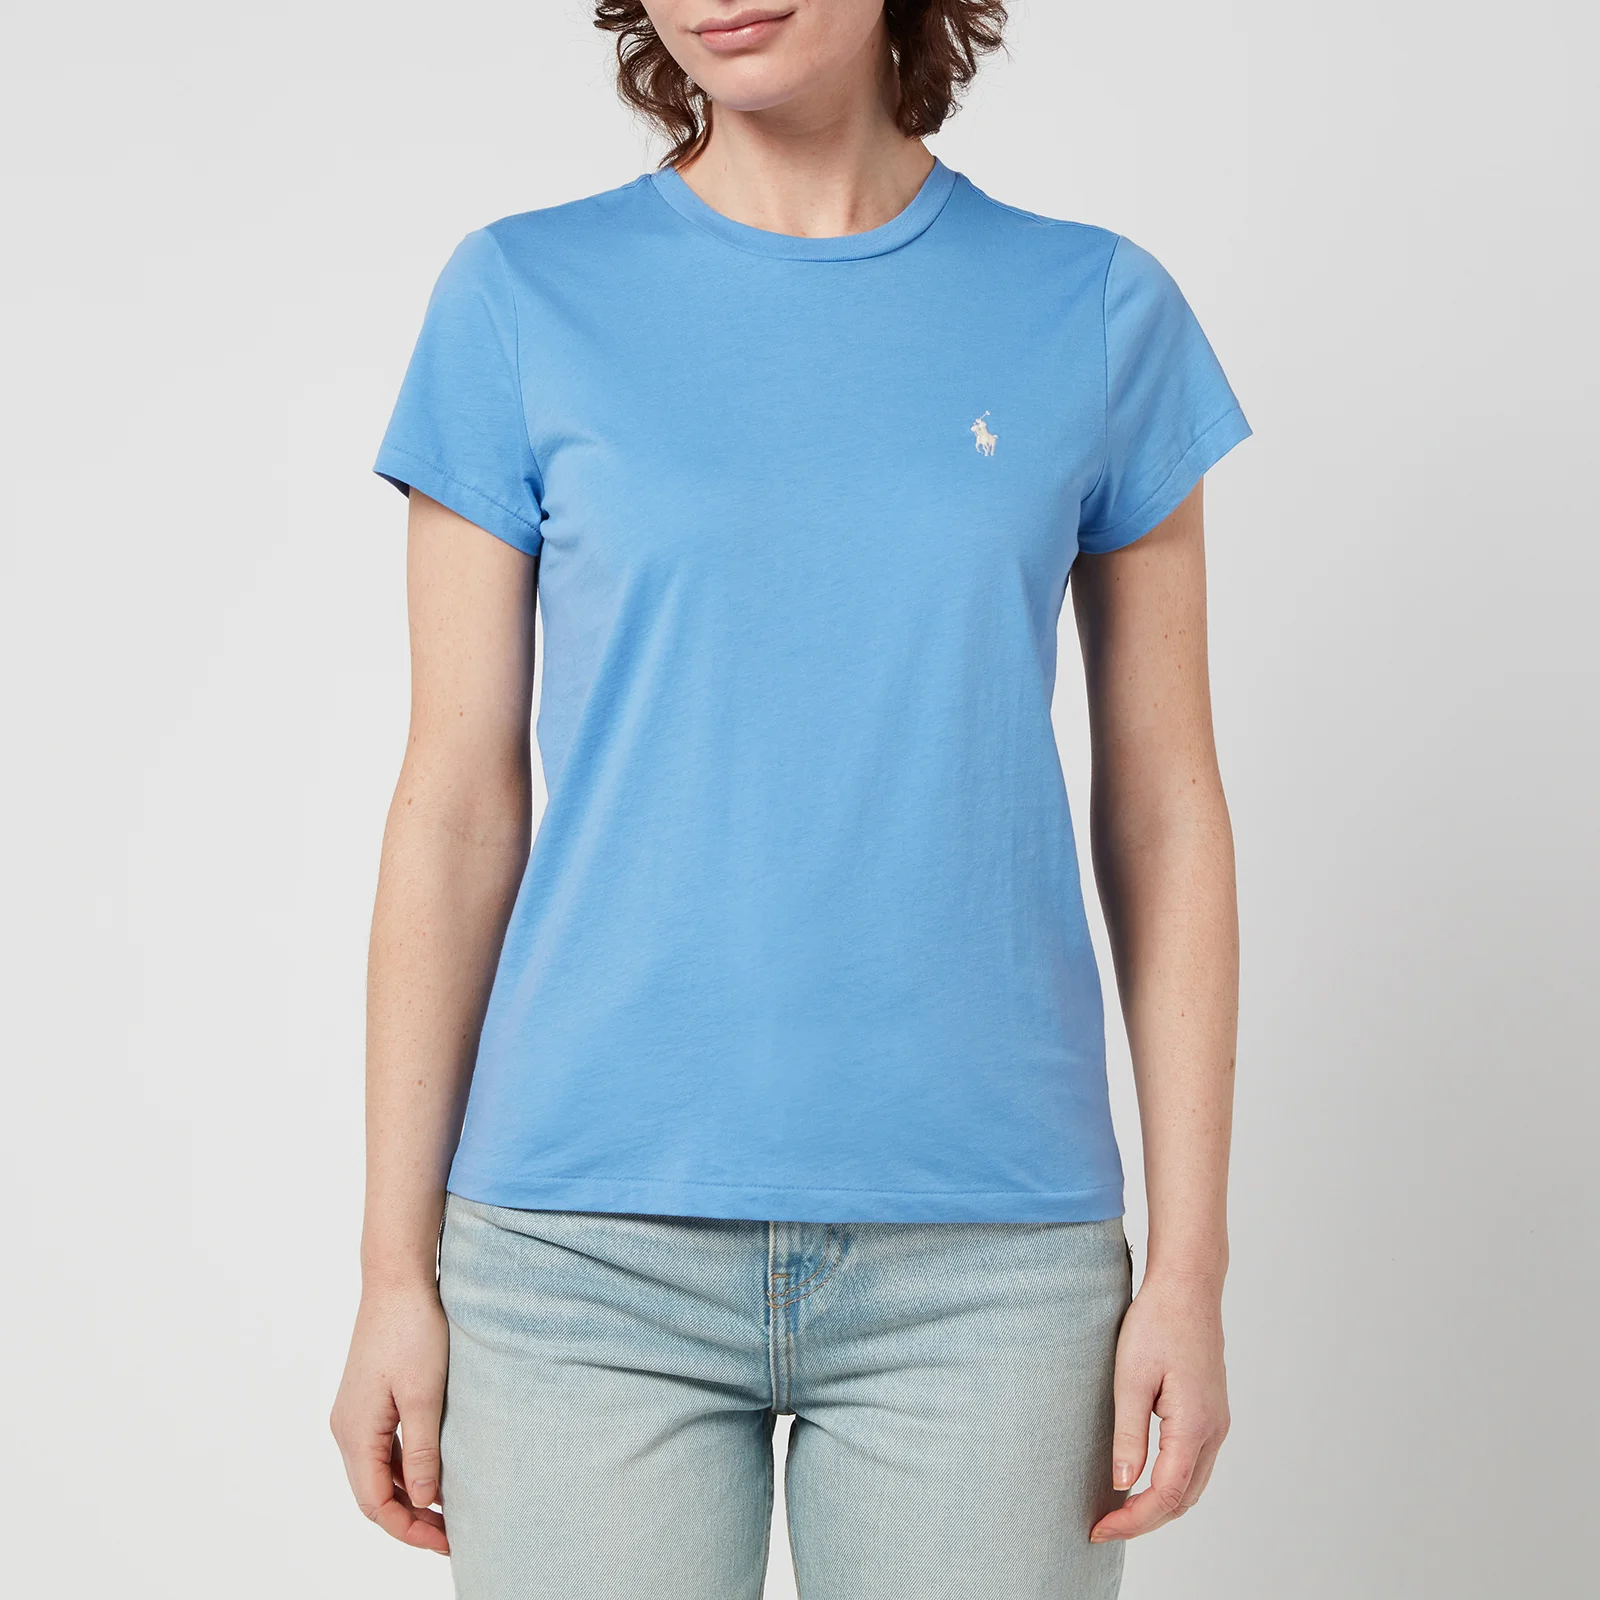 Polo Ralph Lauren Women's Short Sleeve-T-Shirt - Summer Blue Image 1